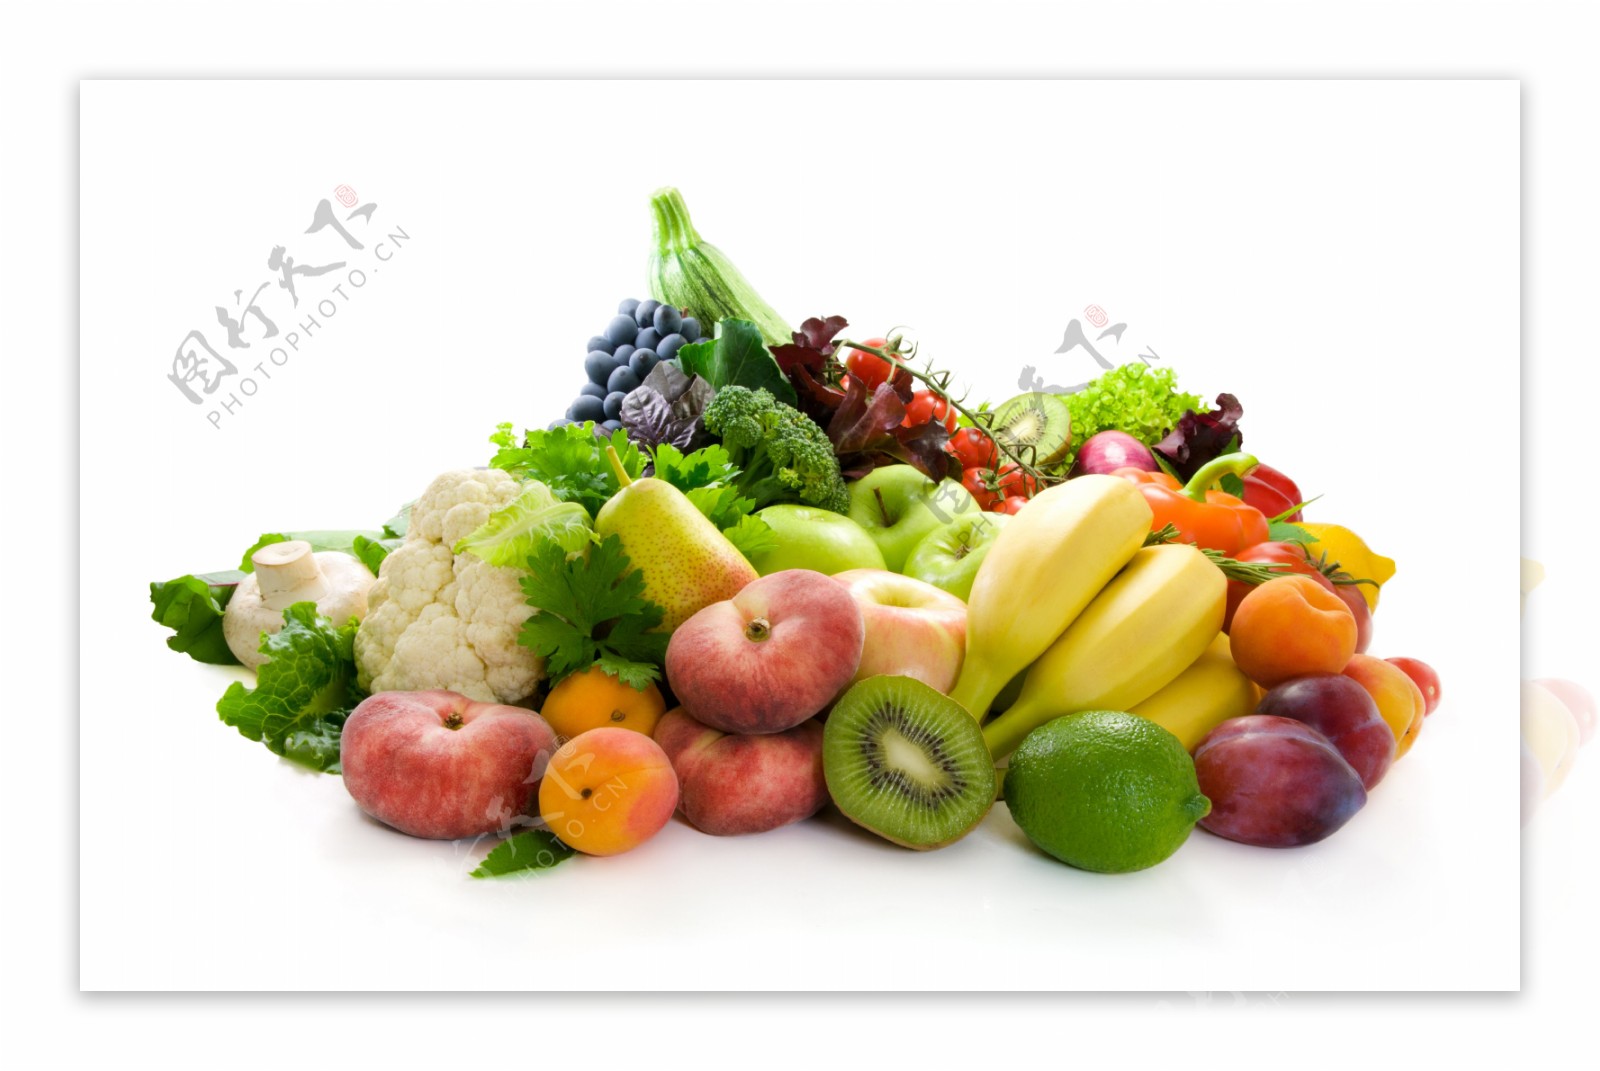 新鲜的蔬菜和水果